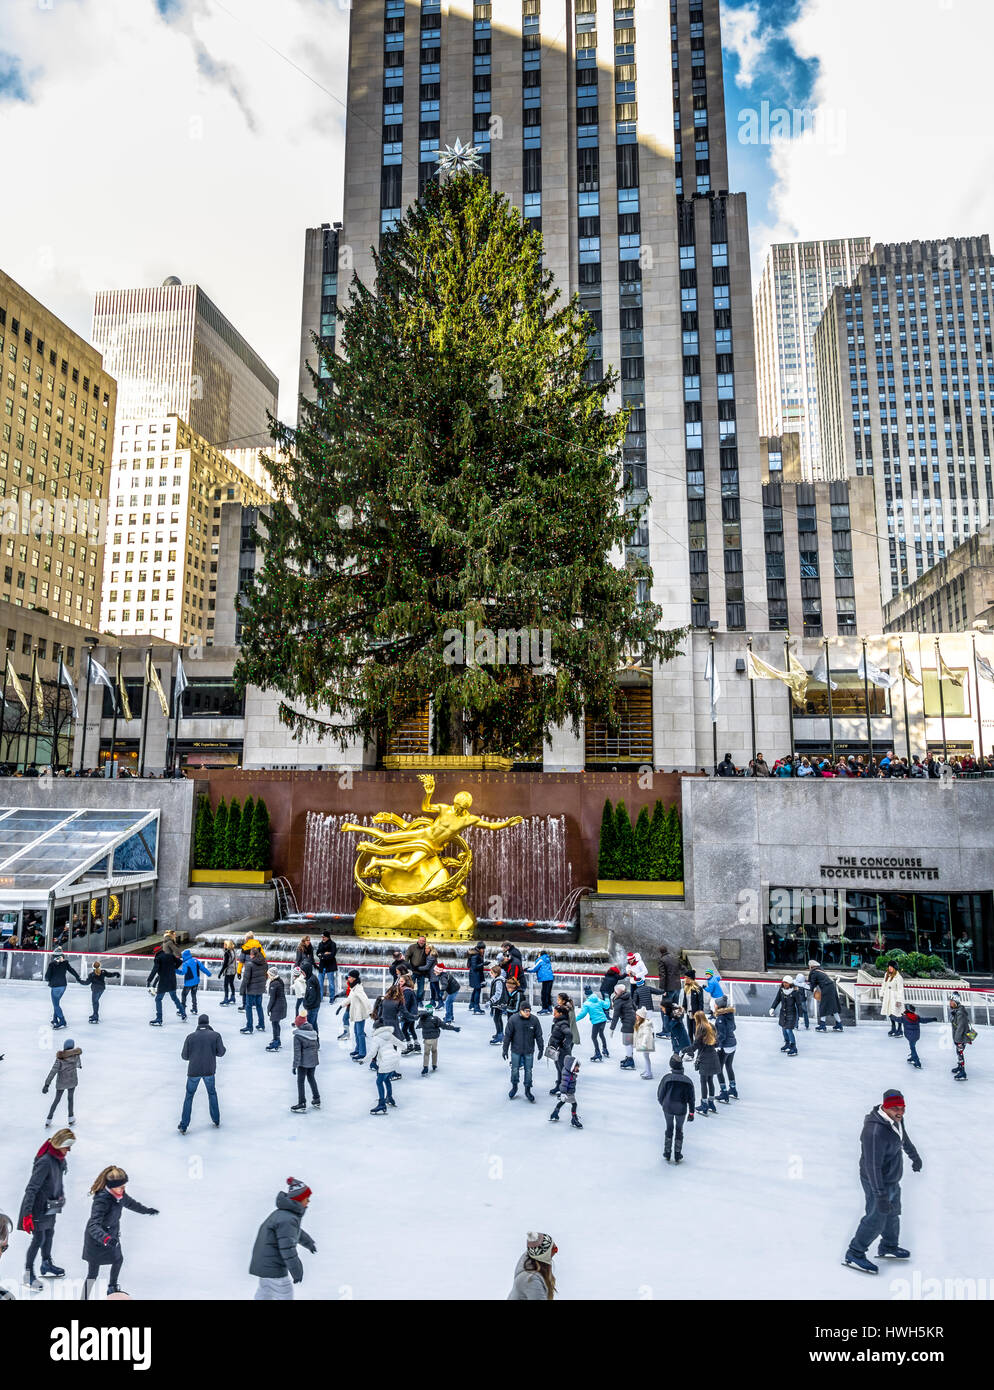 La gente patinar sobre hielo delante del árbol de Navidad del Rockefeller Center - Nueva York, EE.UU. Foto de stock